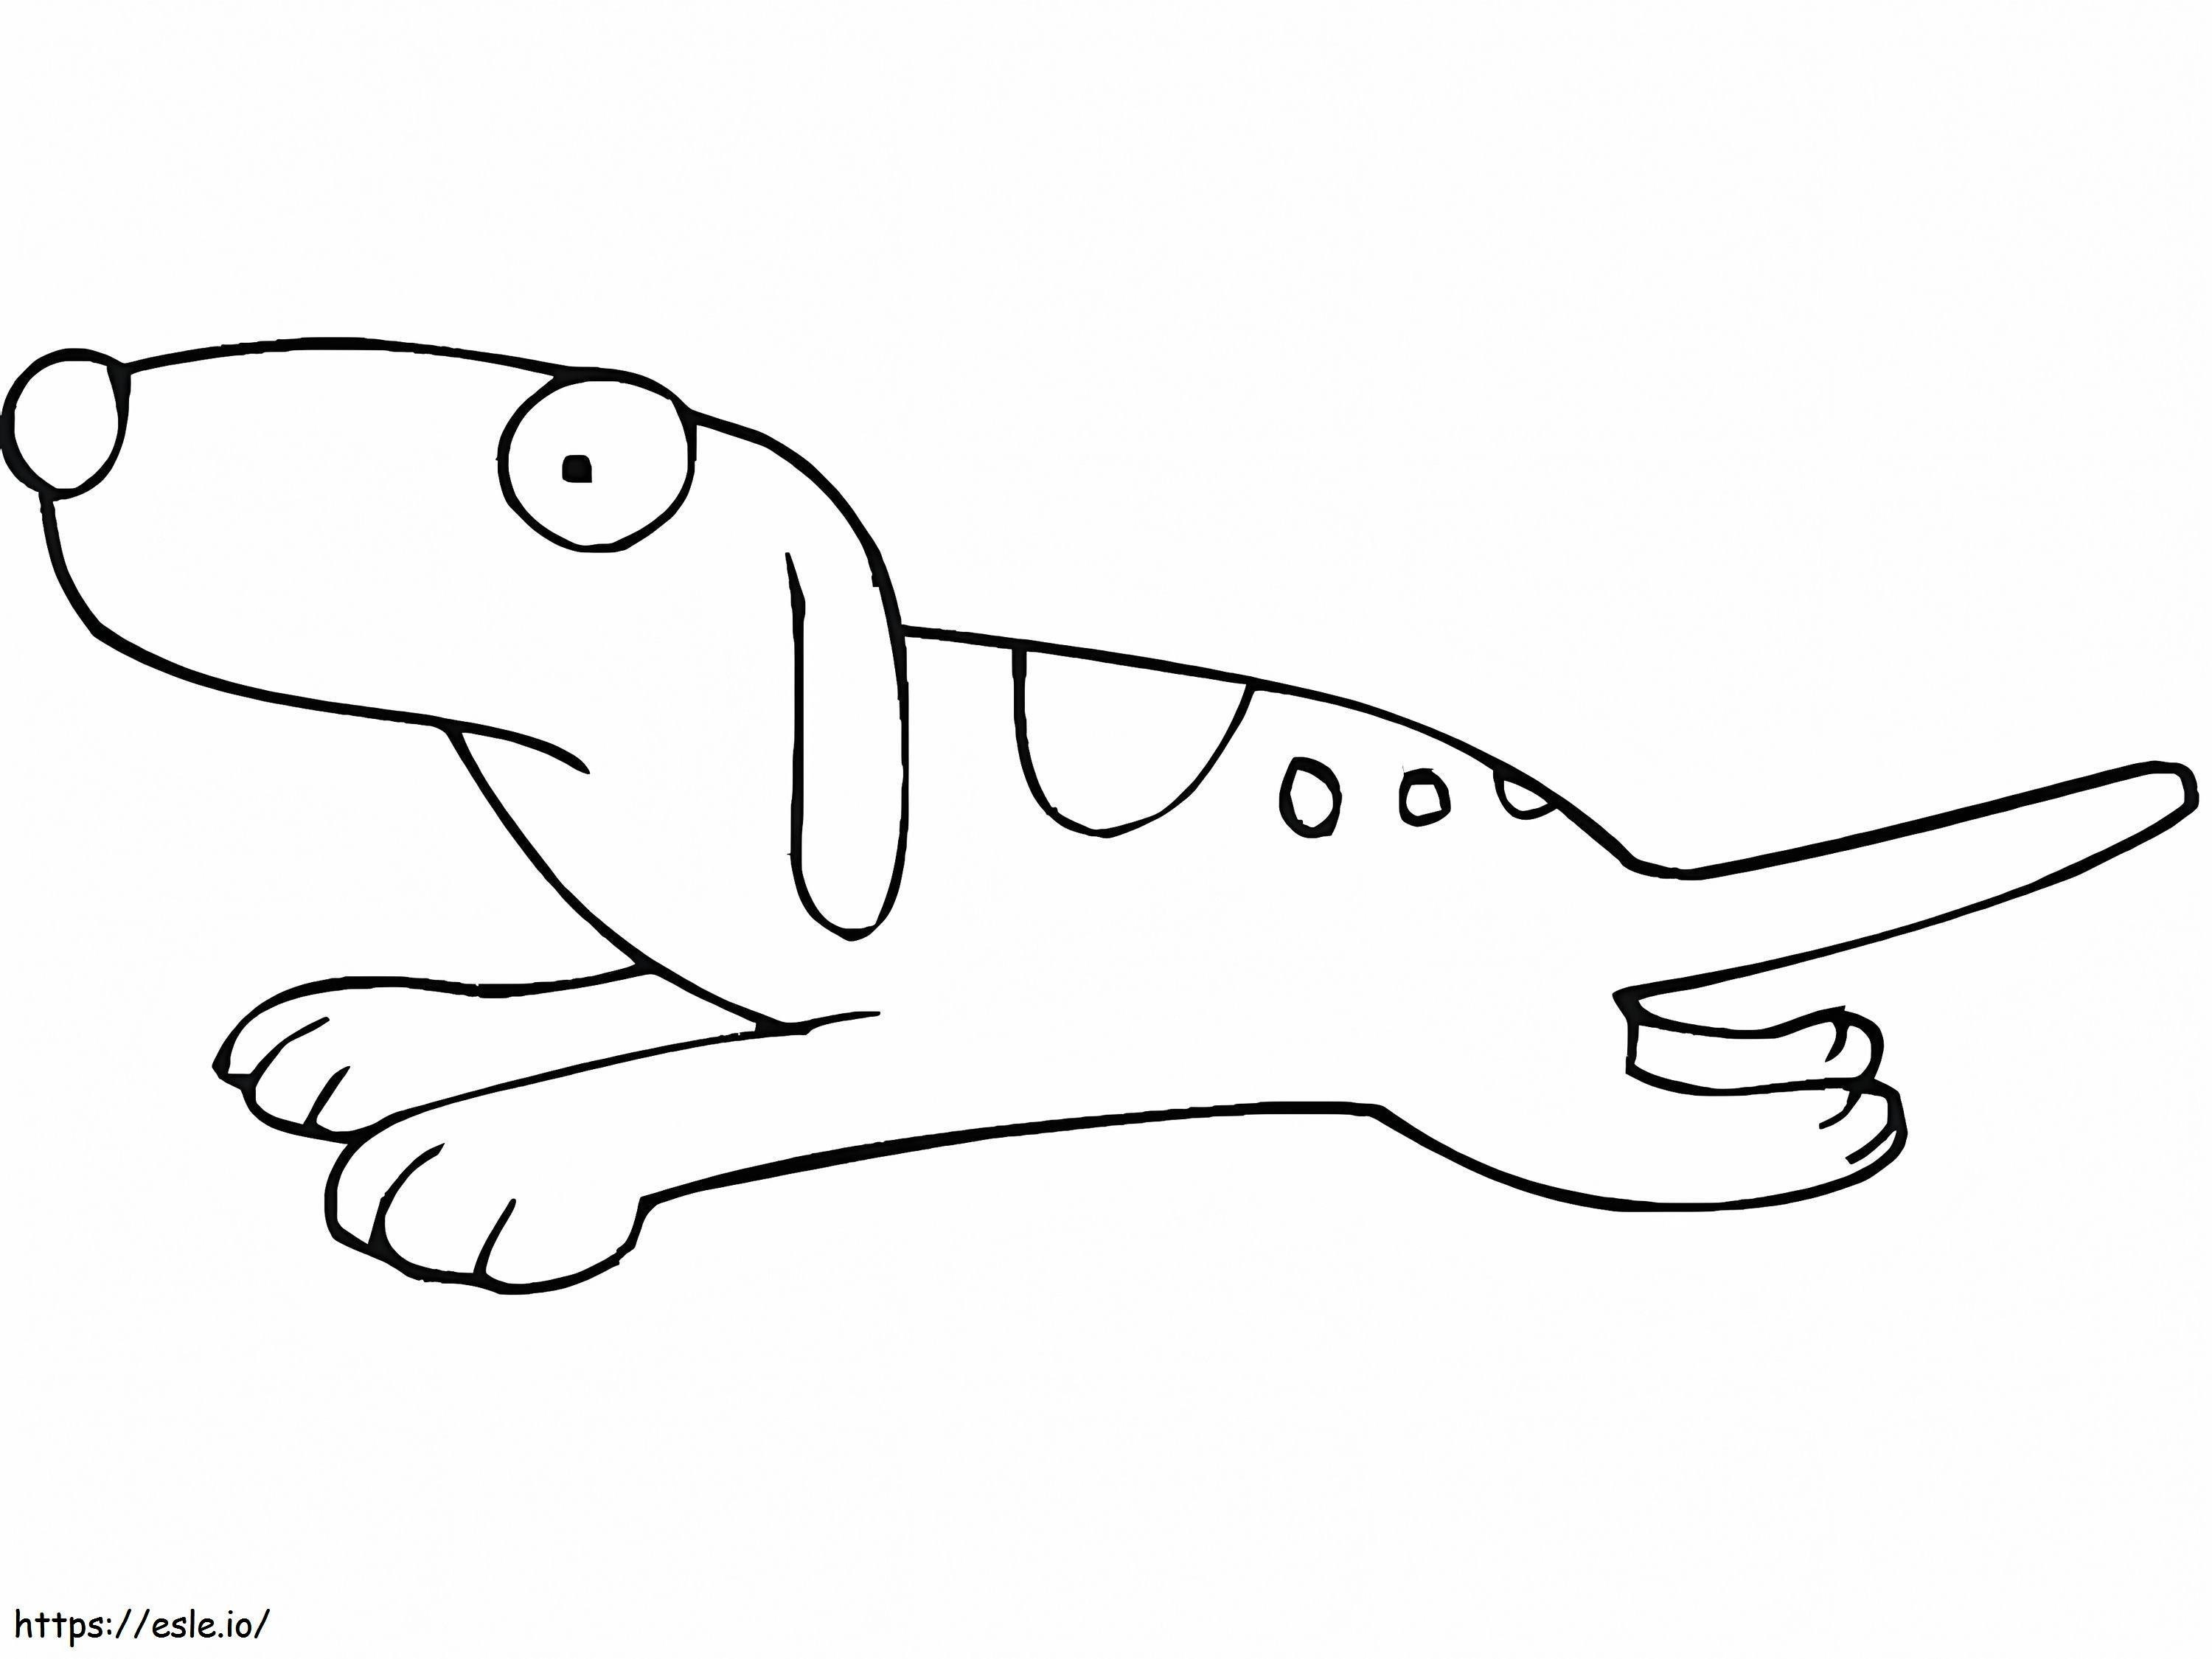 Coloriage Caricature d'un chien en mouvement à imprimer dessin